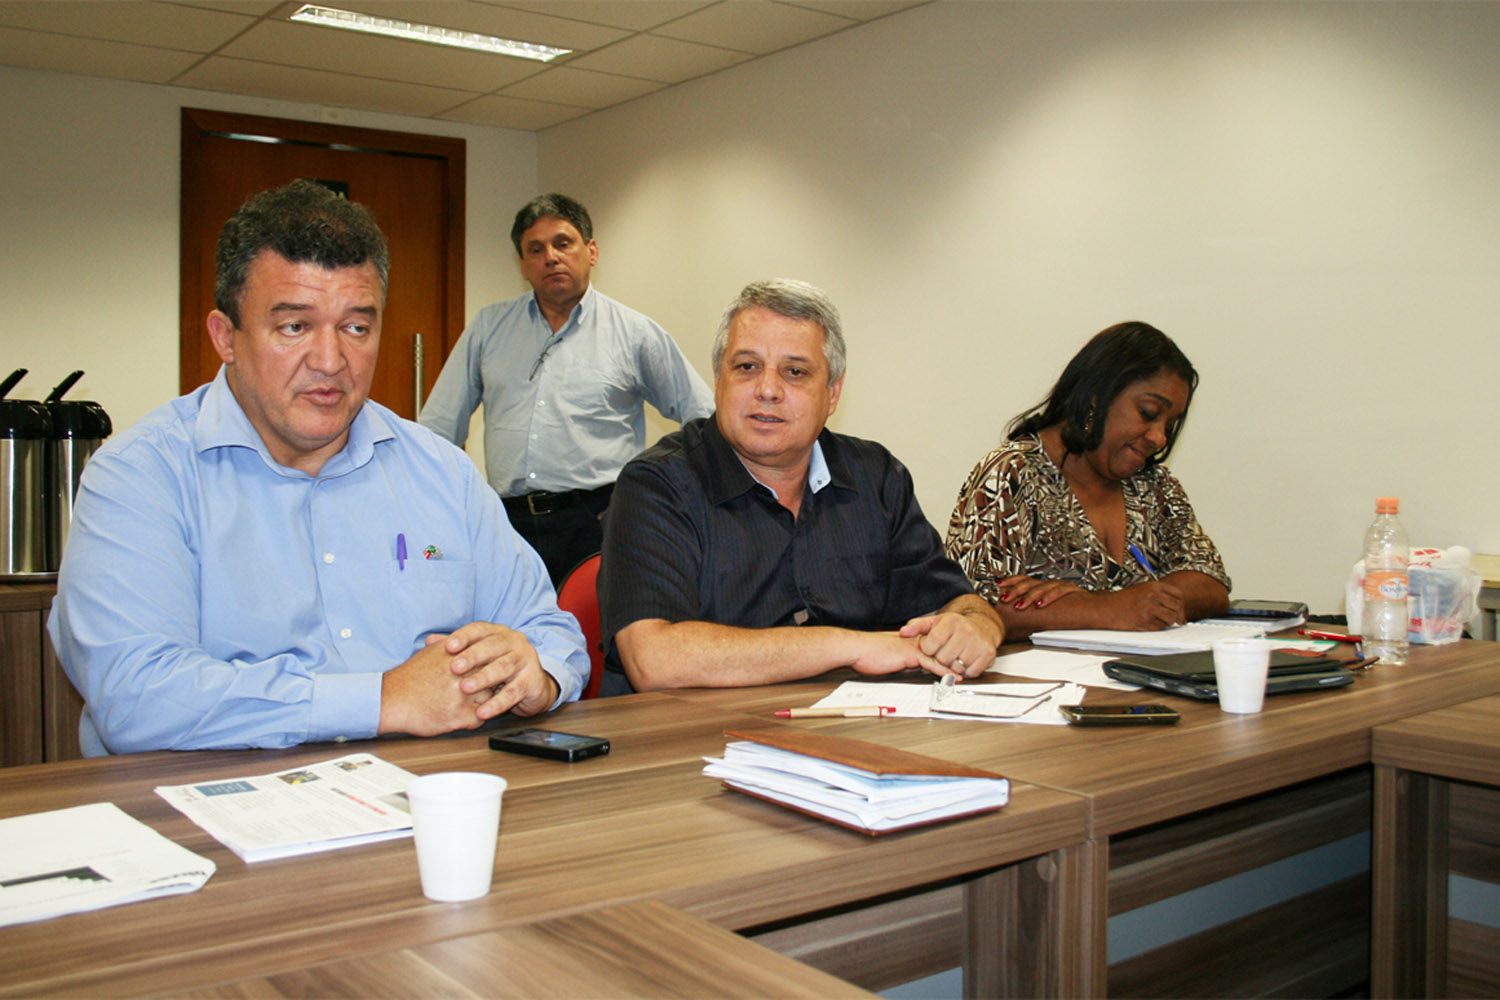 2ºmandato de Dilma: Lideranças metalúrgicas defendem implantação da OLT em todas as empresas no País